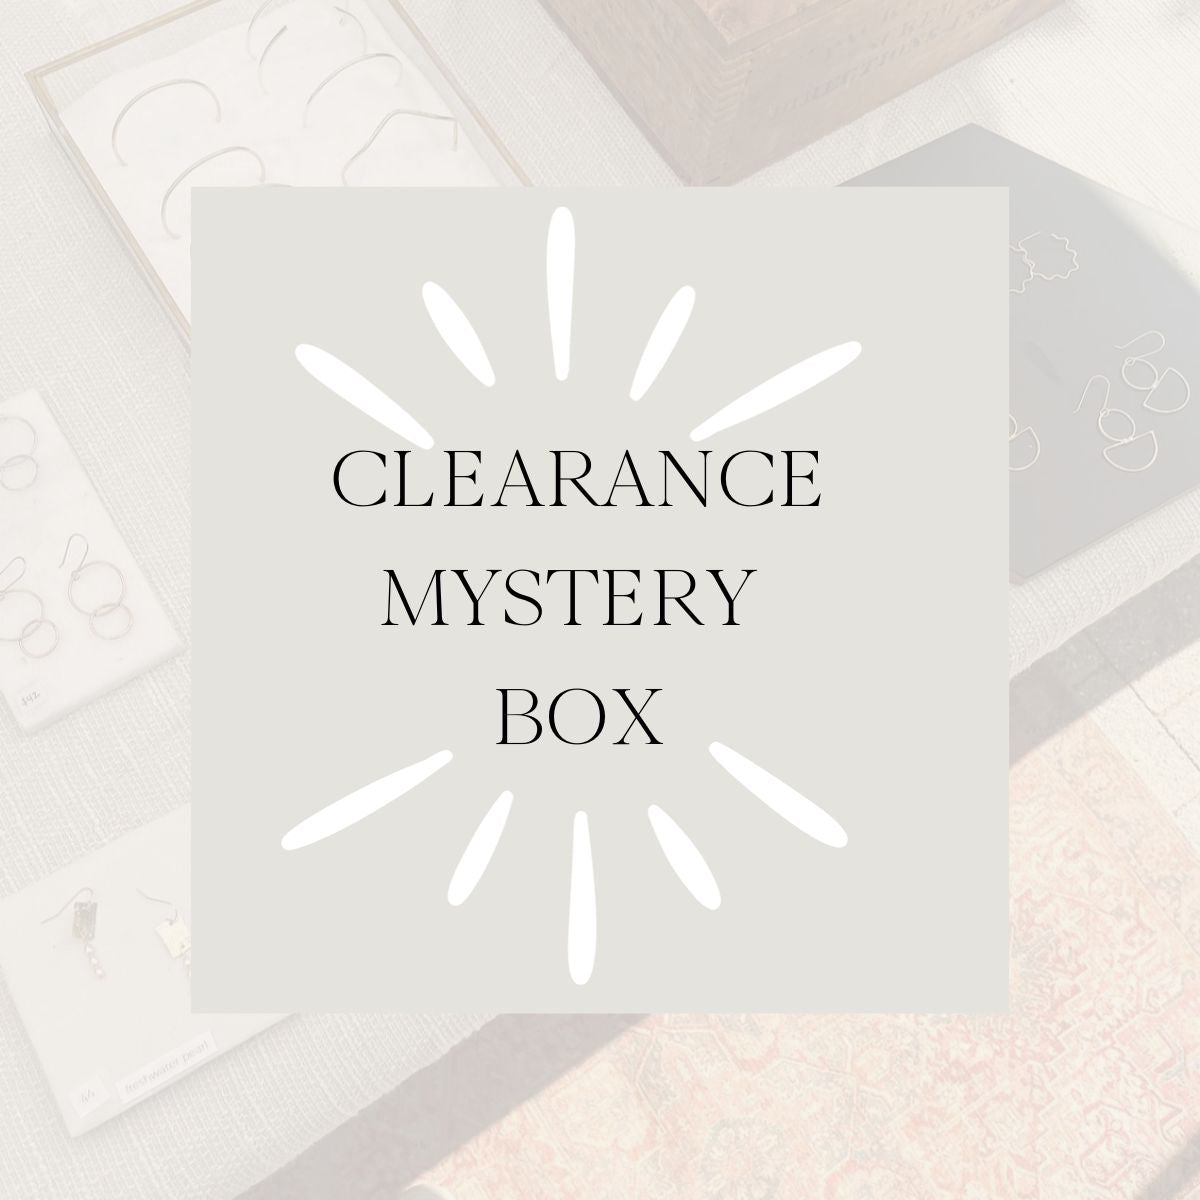 Clearance Mystery Box!